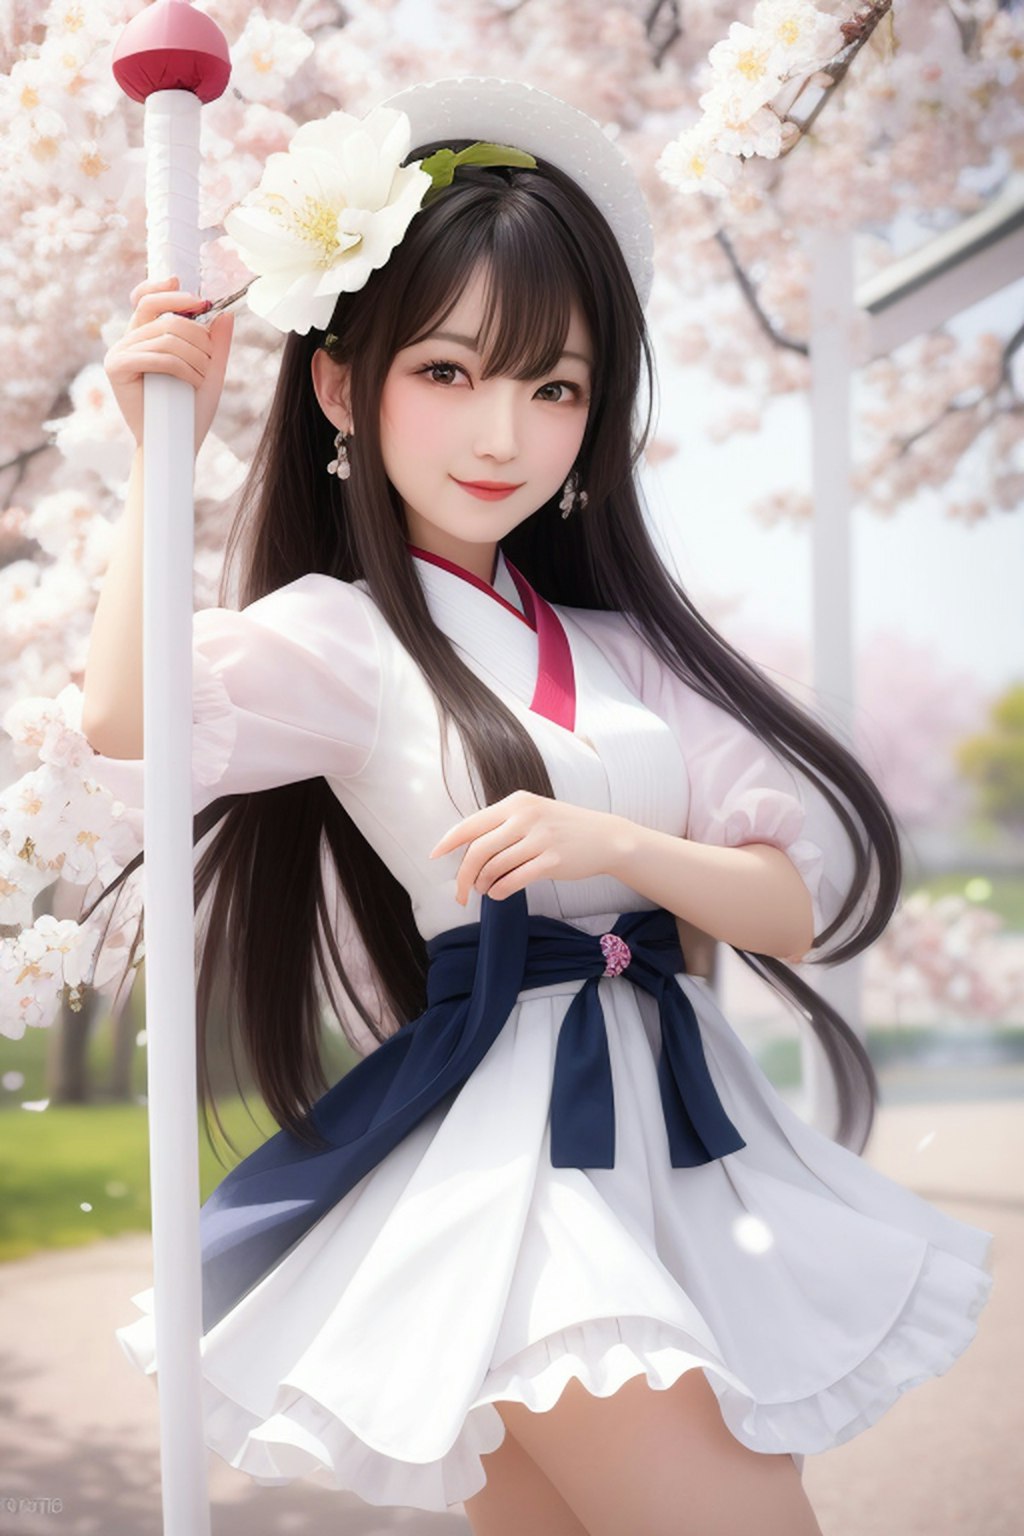 桜吹雪のお姉さん (ani2real)